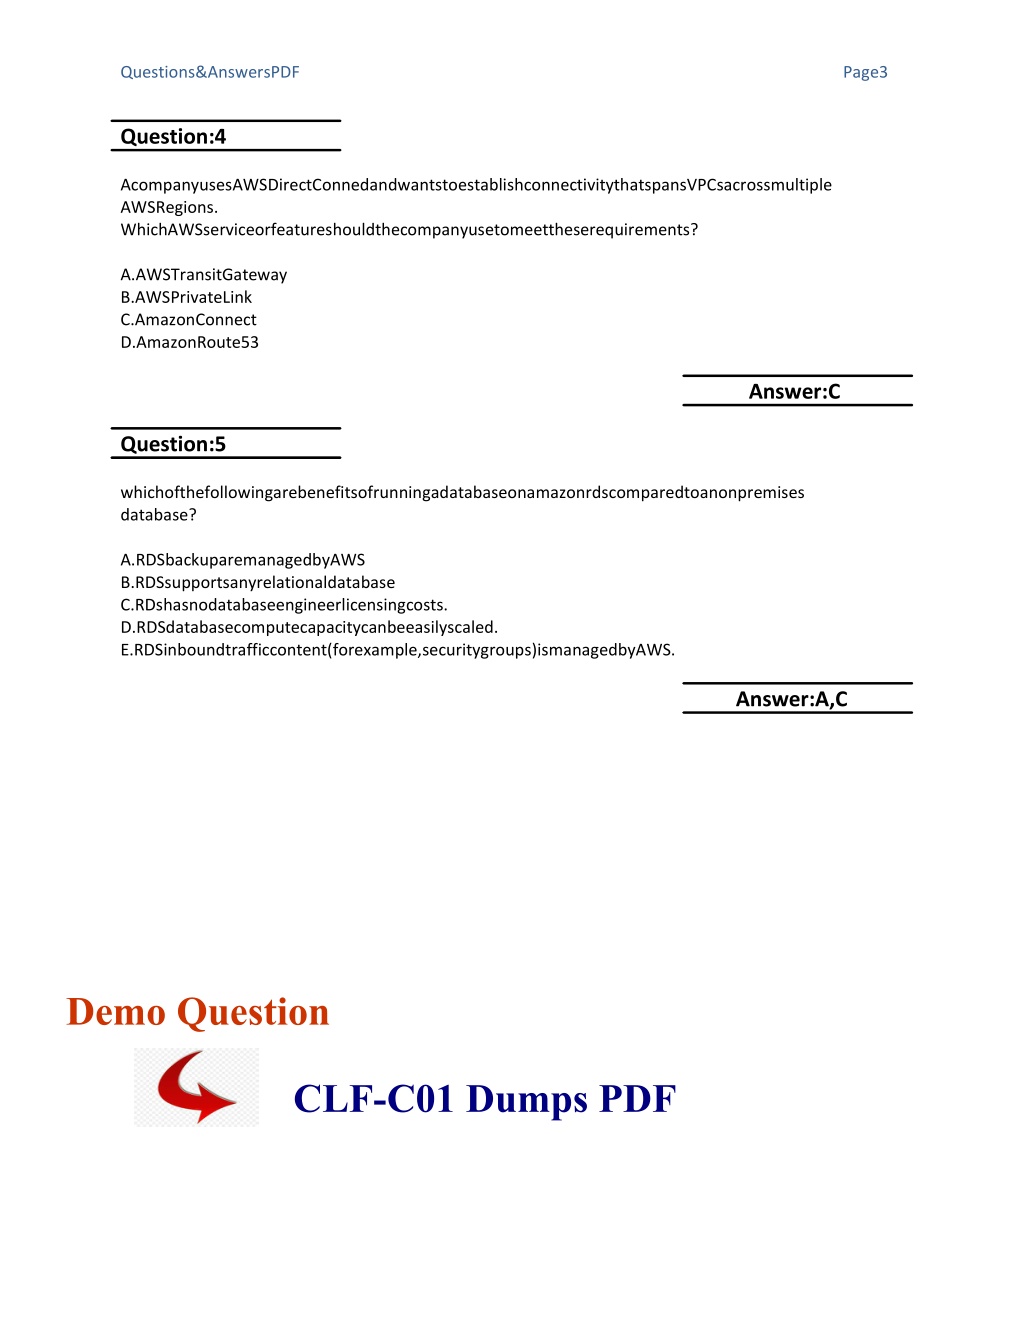 CLF-C01 Fragenkatalog